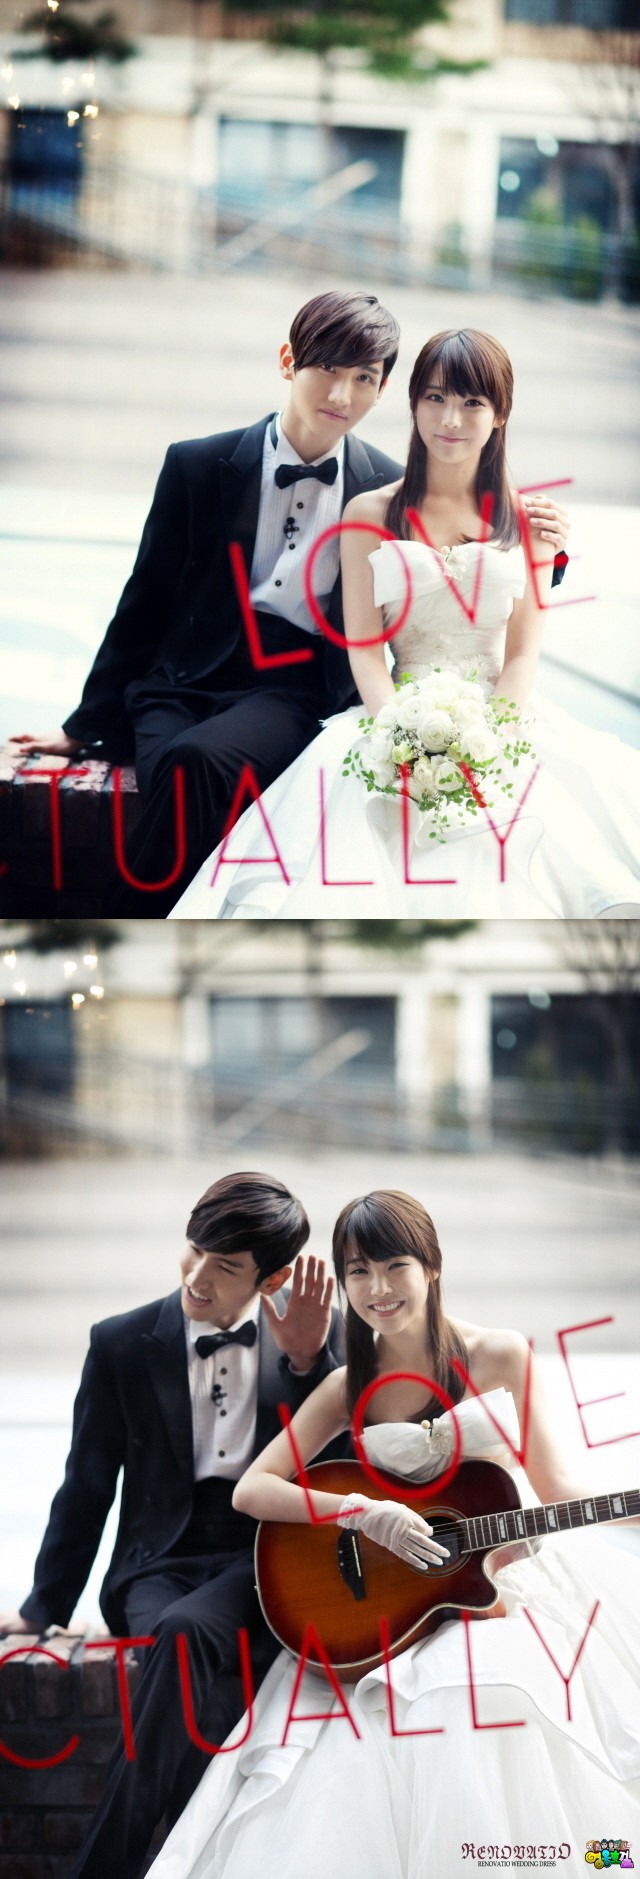 [Foto] TVXQ SBS fotos de la boda Héroes  3220